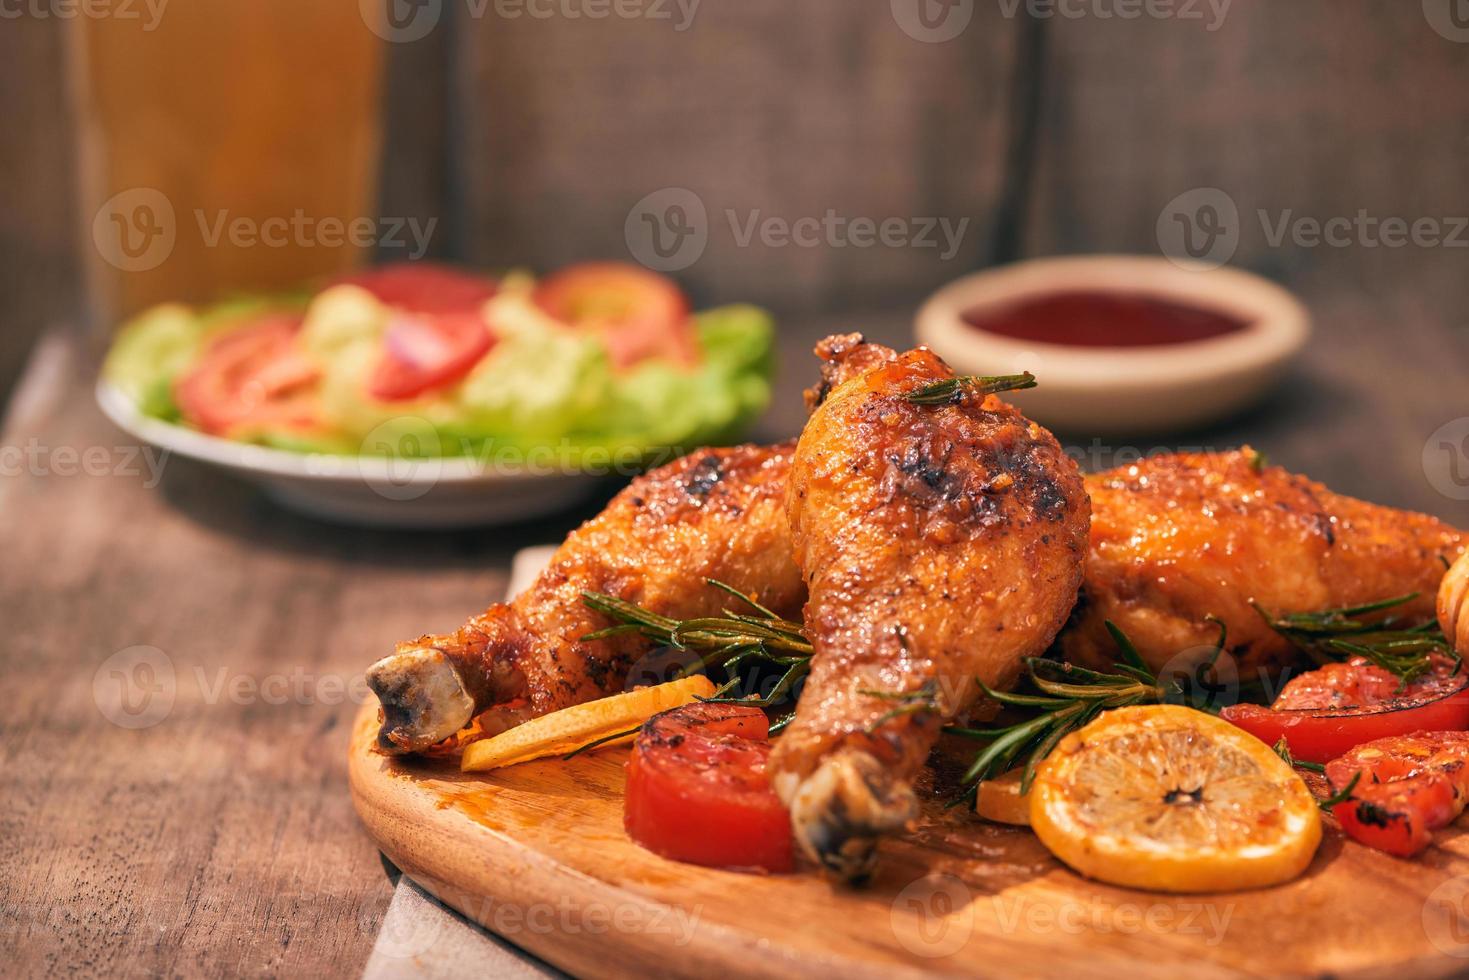 cuisses de poulet grillées rôties sur le gril sur une planche à découper en bois avec sauce tomate dans un bol, tomates fraîches et feuilles de laitue, poivre amer, chope de bière en verre photo